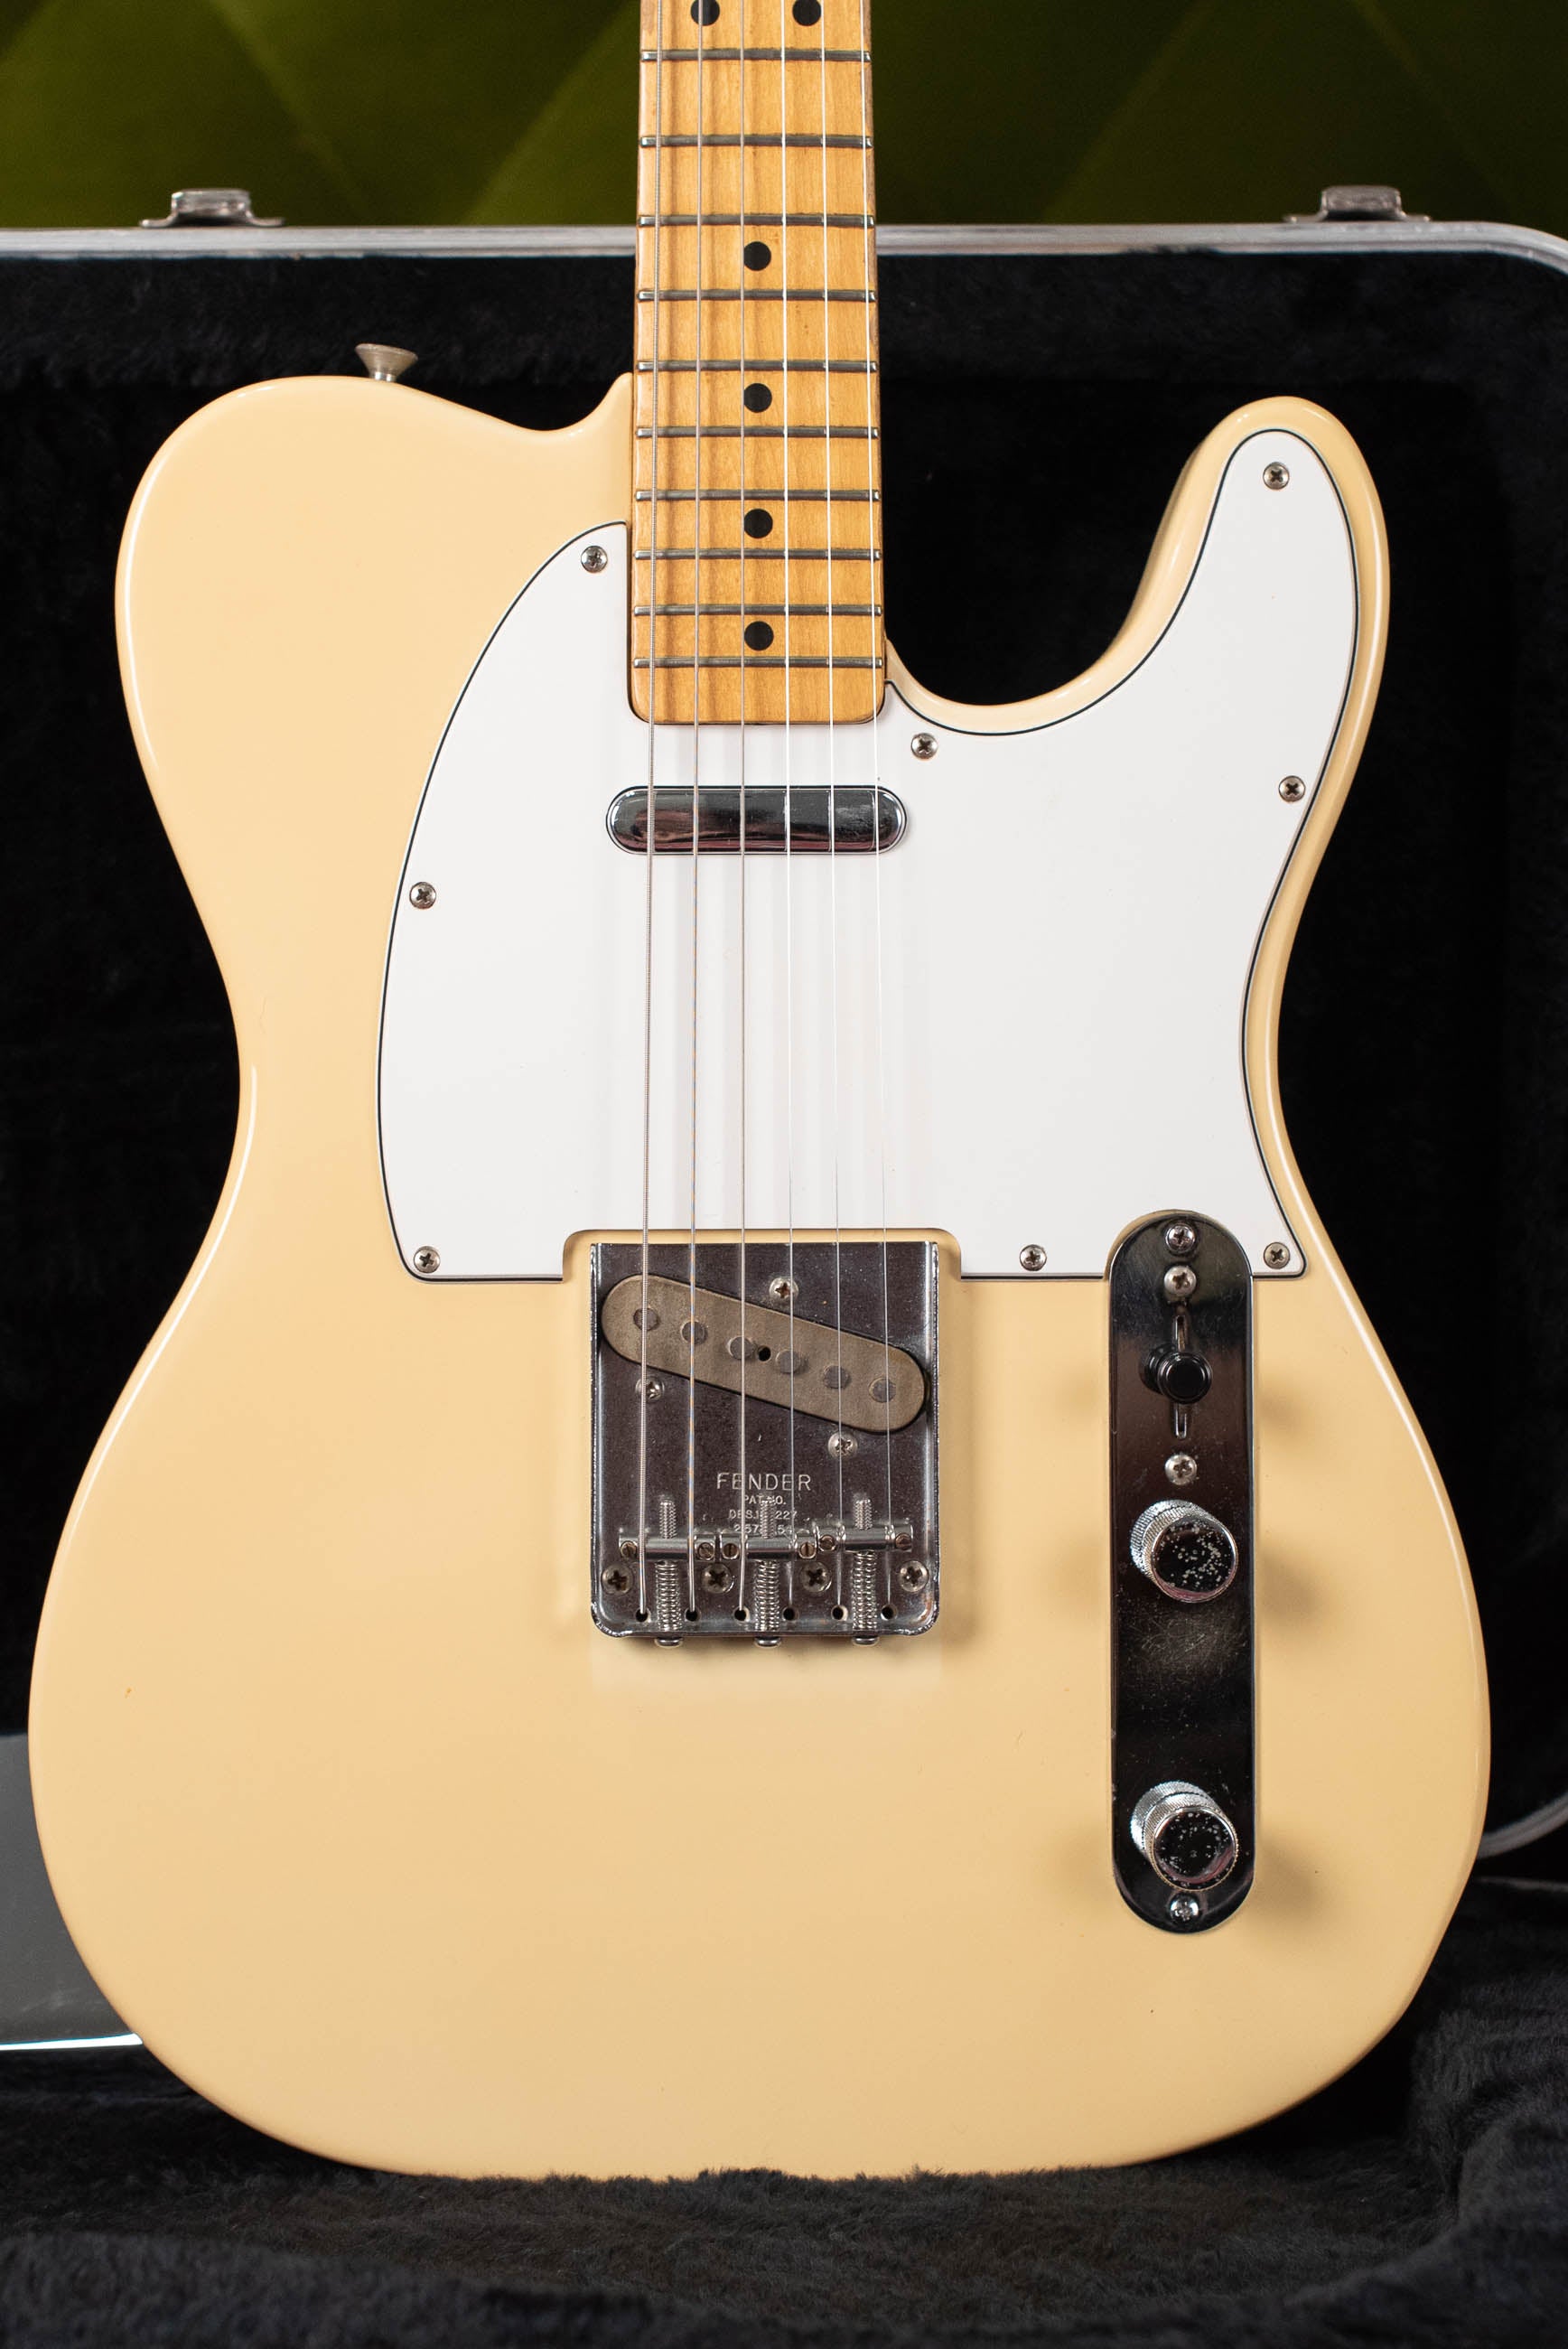 Vintage 1982 Fender Telecaster guitar white